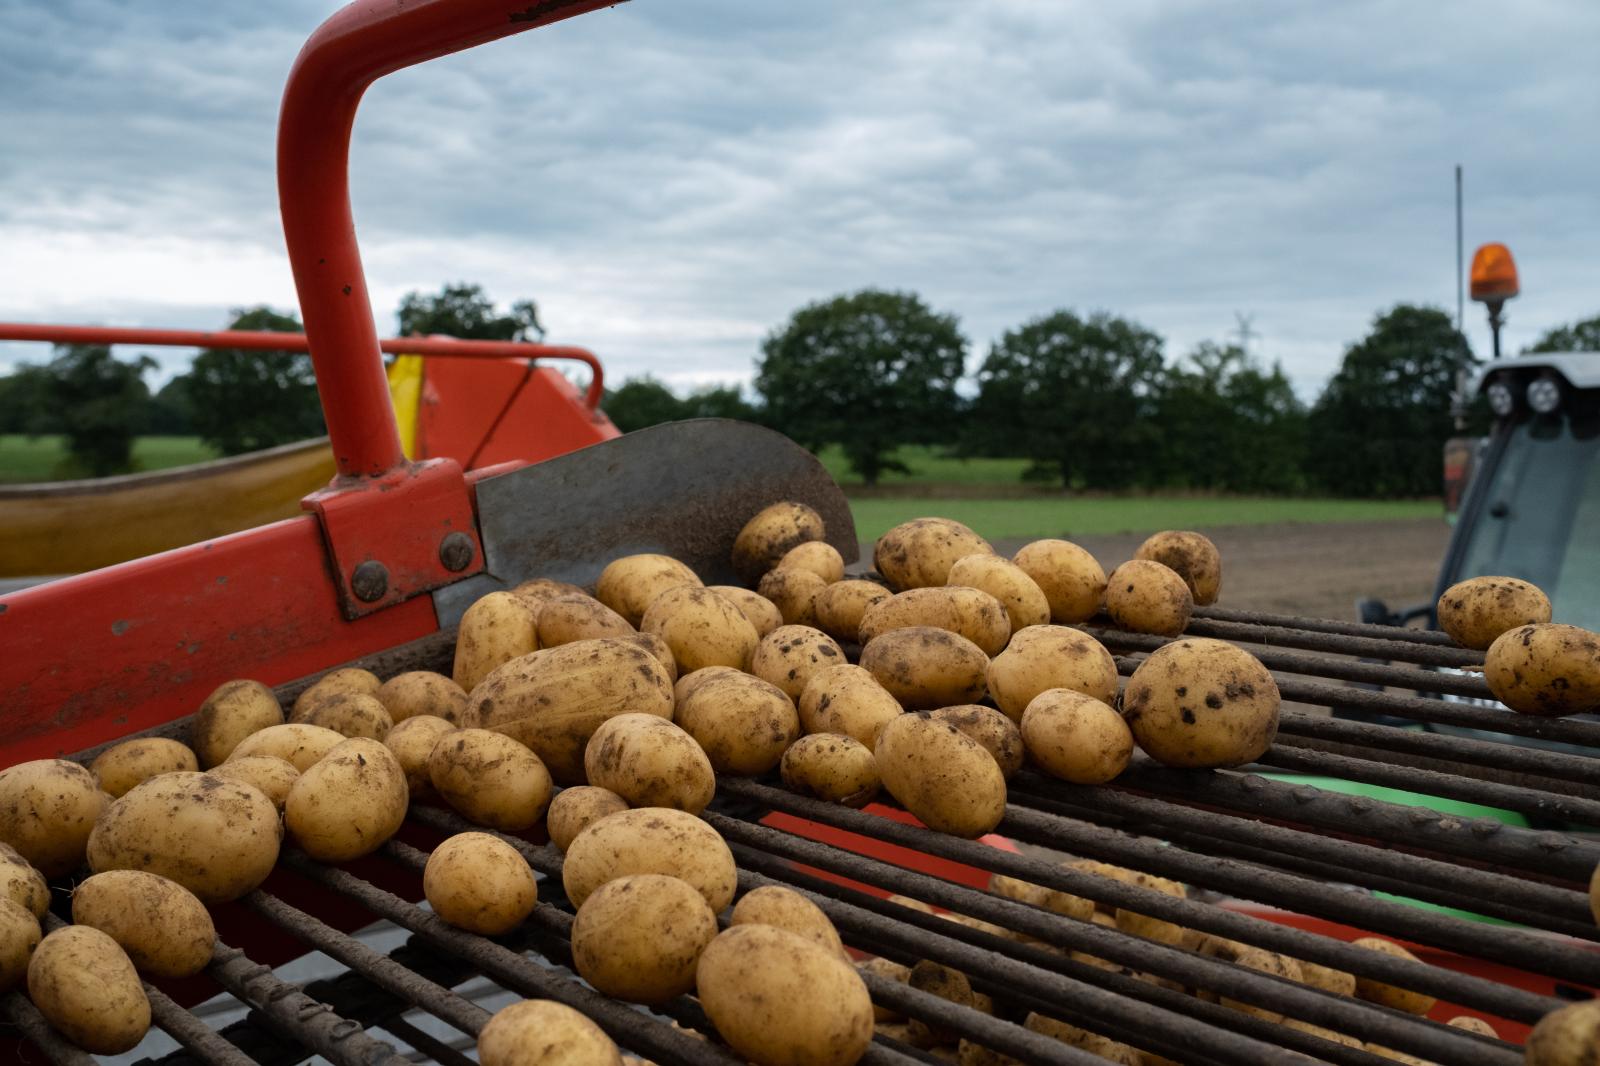 Potato harvester, September 2022